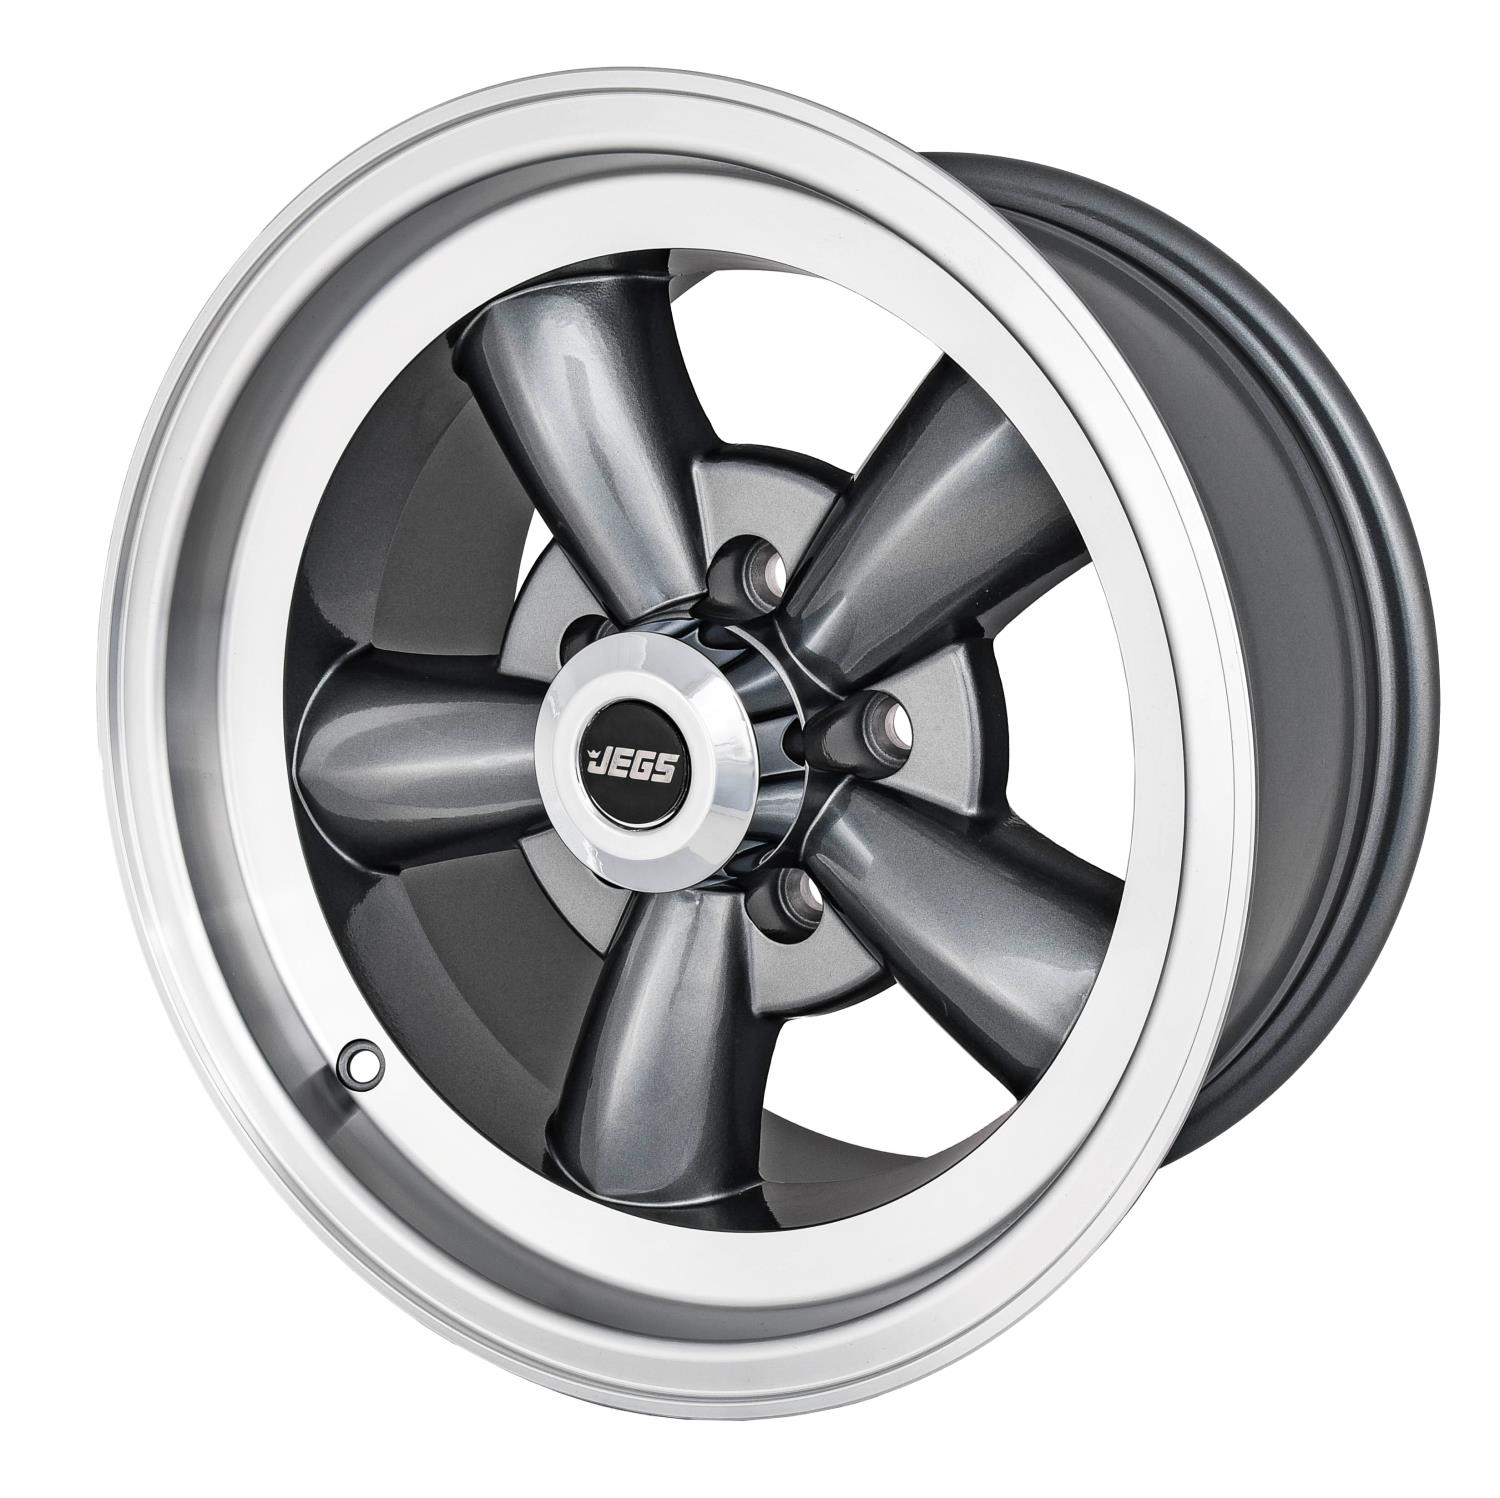 Sport Torque Wheel [Size: 15" x 8"] Polished Lip with Grey Spokes